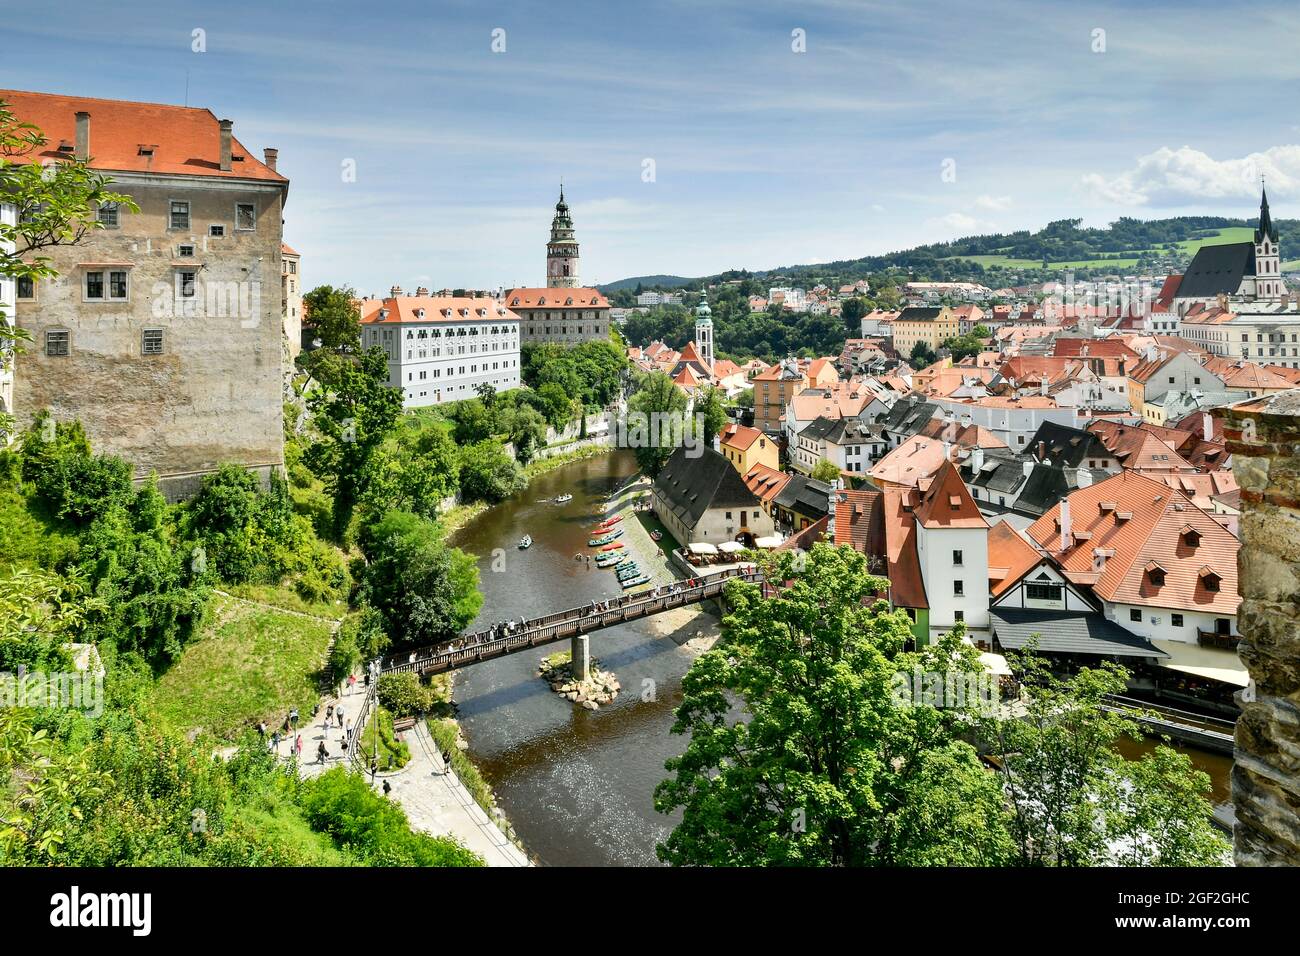 Centro storico di Český Krumlov, nella regione della Boemia meridionale della Repubblica Ceca, è attraversata dal fiume Moldava, Foto Stock